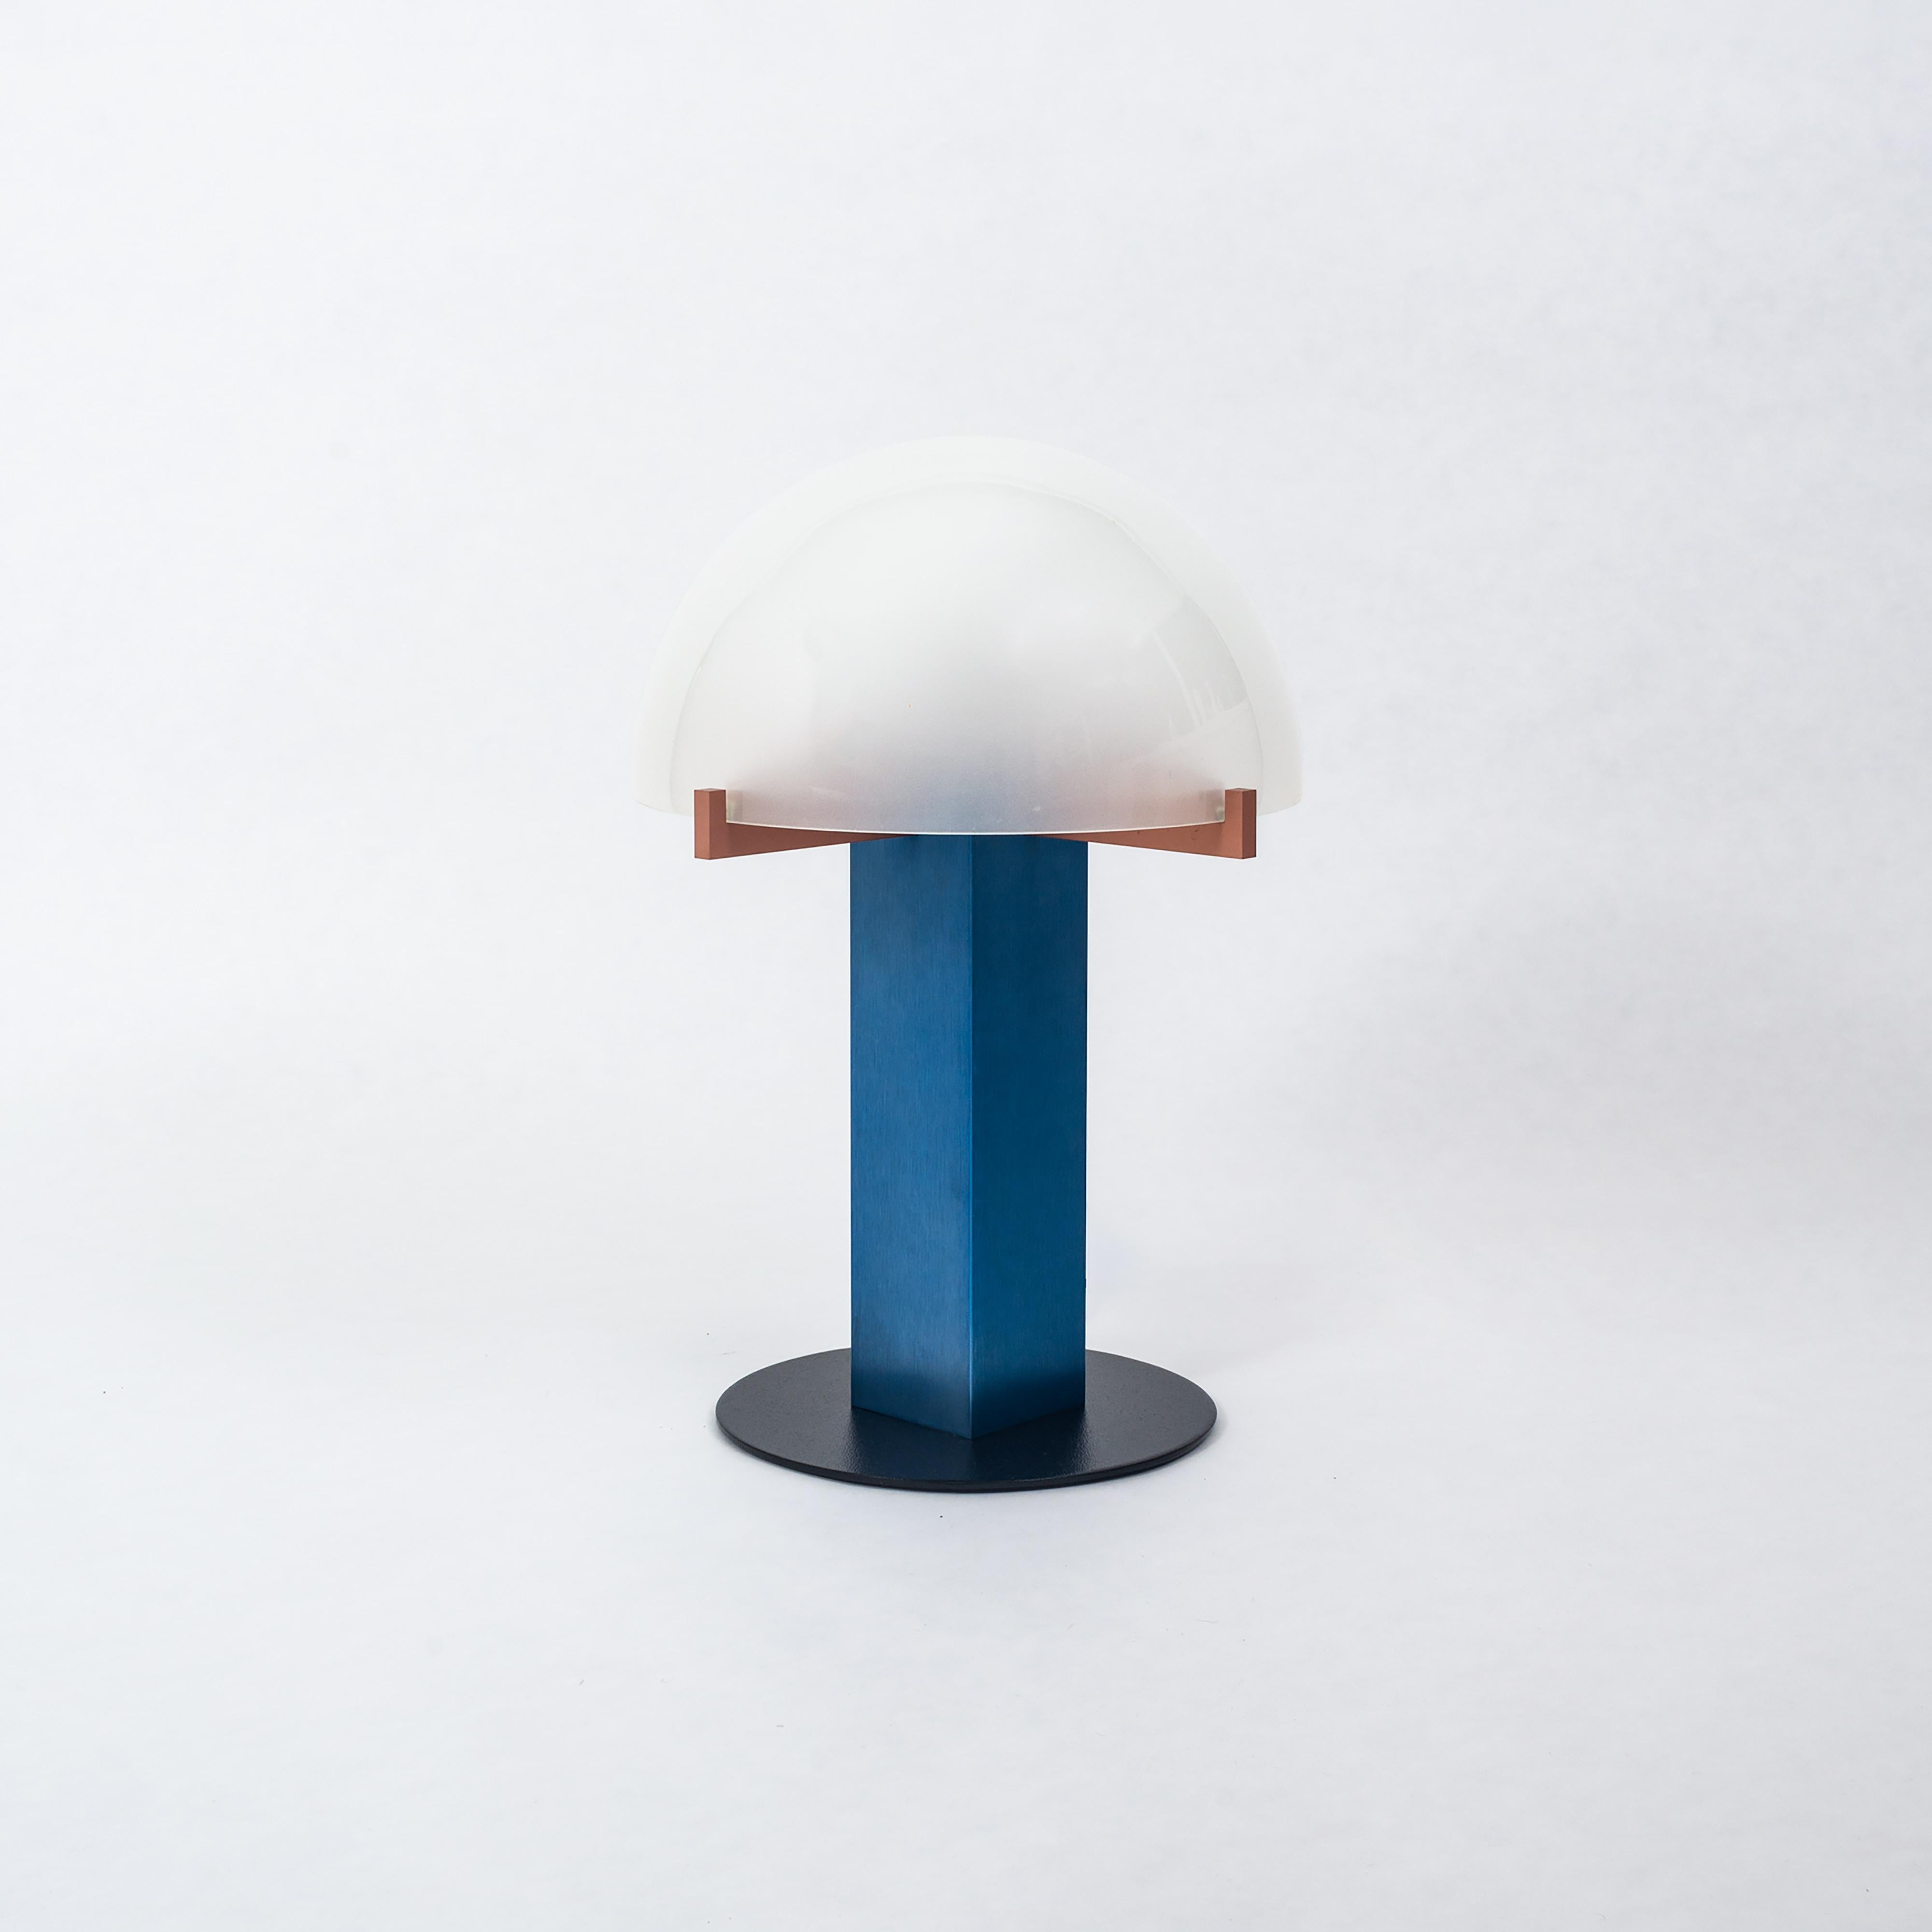 Moderne Tischlampe von Ron Rezek, ca. 1980er Jahre. Die Lampe ist auch als „Mushroom Lampe“ bekannt. Die Lampe besteht aus blauem und rot eloxiertem, gebürstetem Aluminium mit einem schweren Kuppelschirm aus Milchglas und einem schwarz lackierten